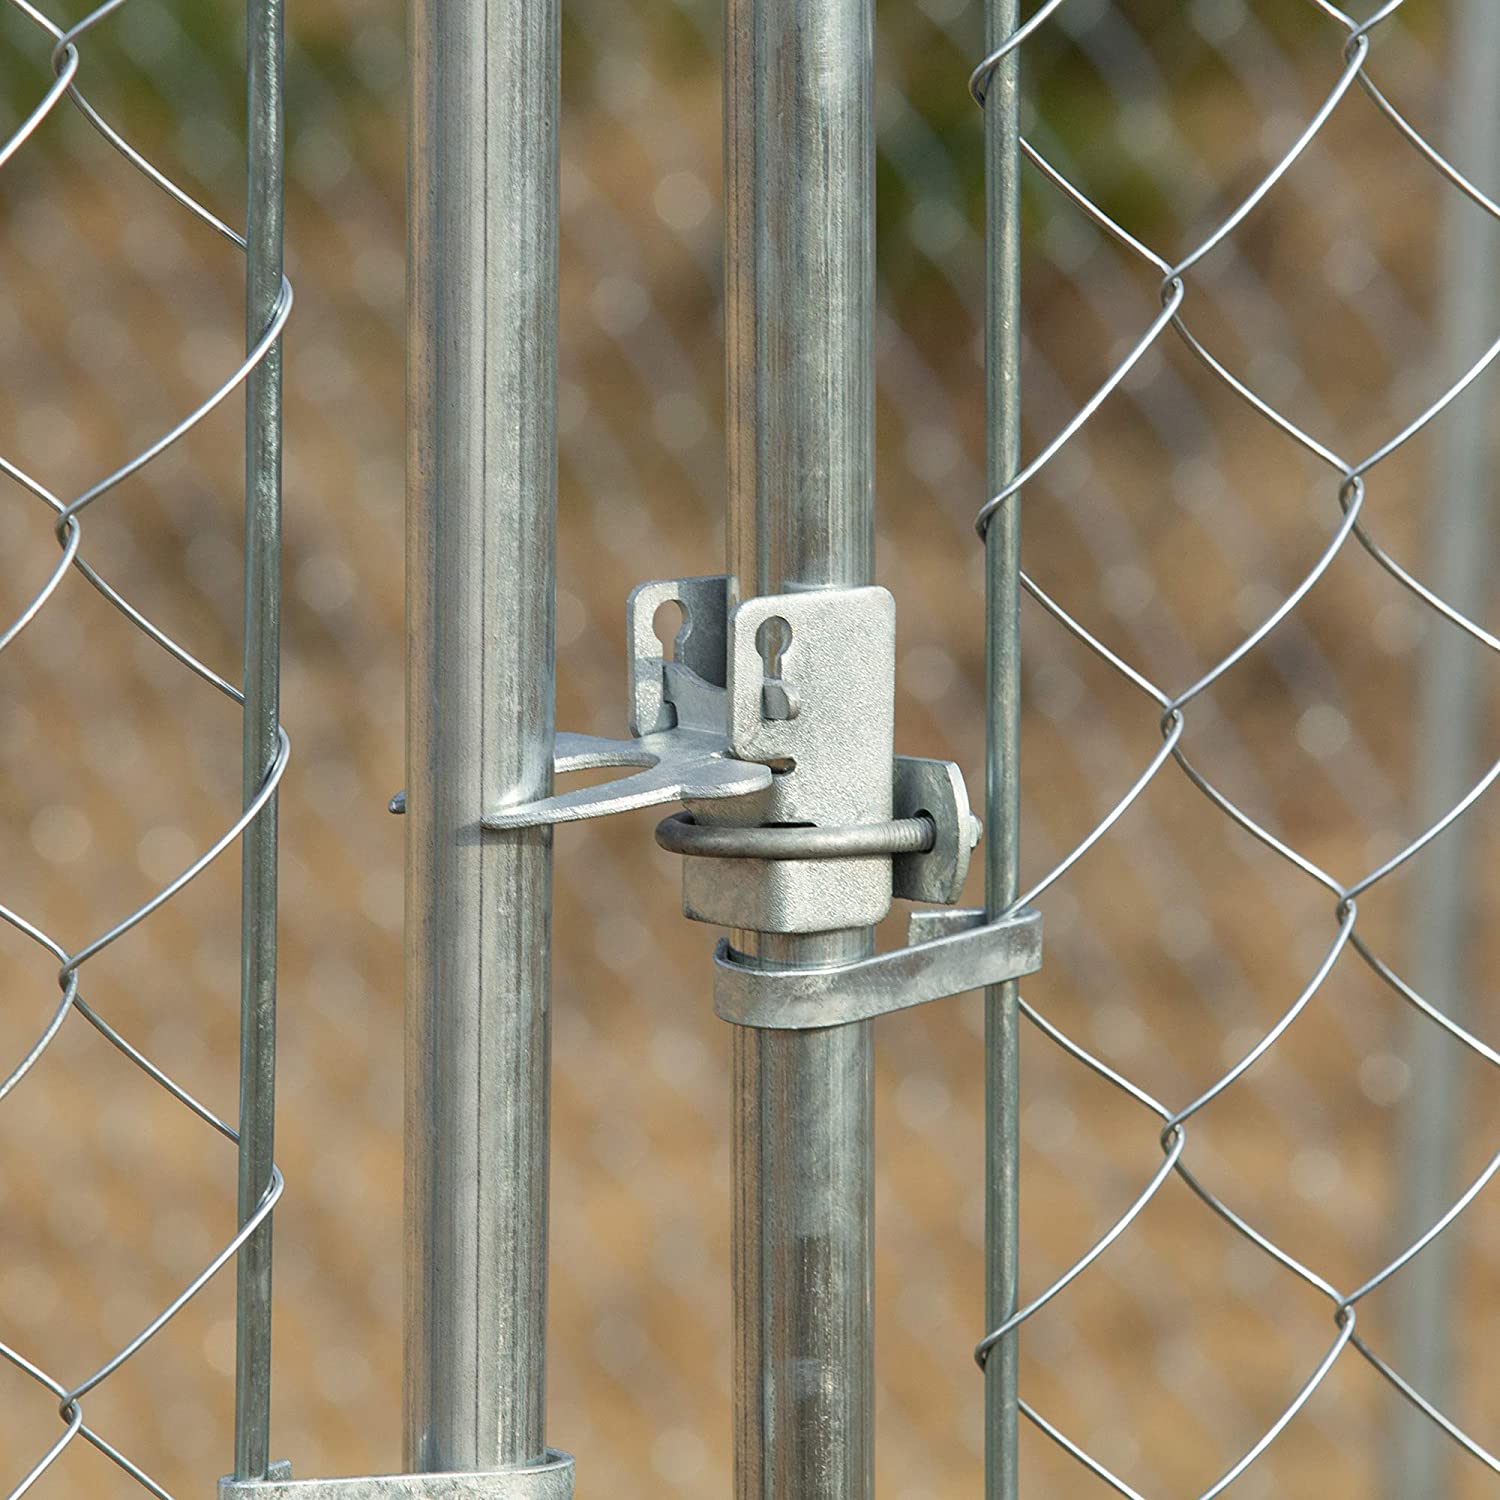 Saan mo magagamit ang chain link fence?